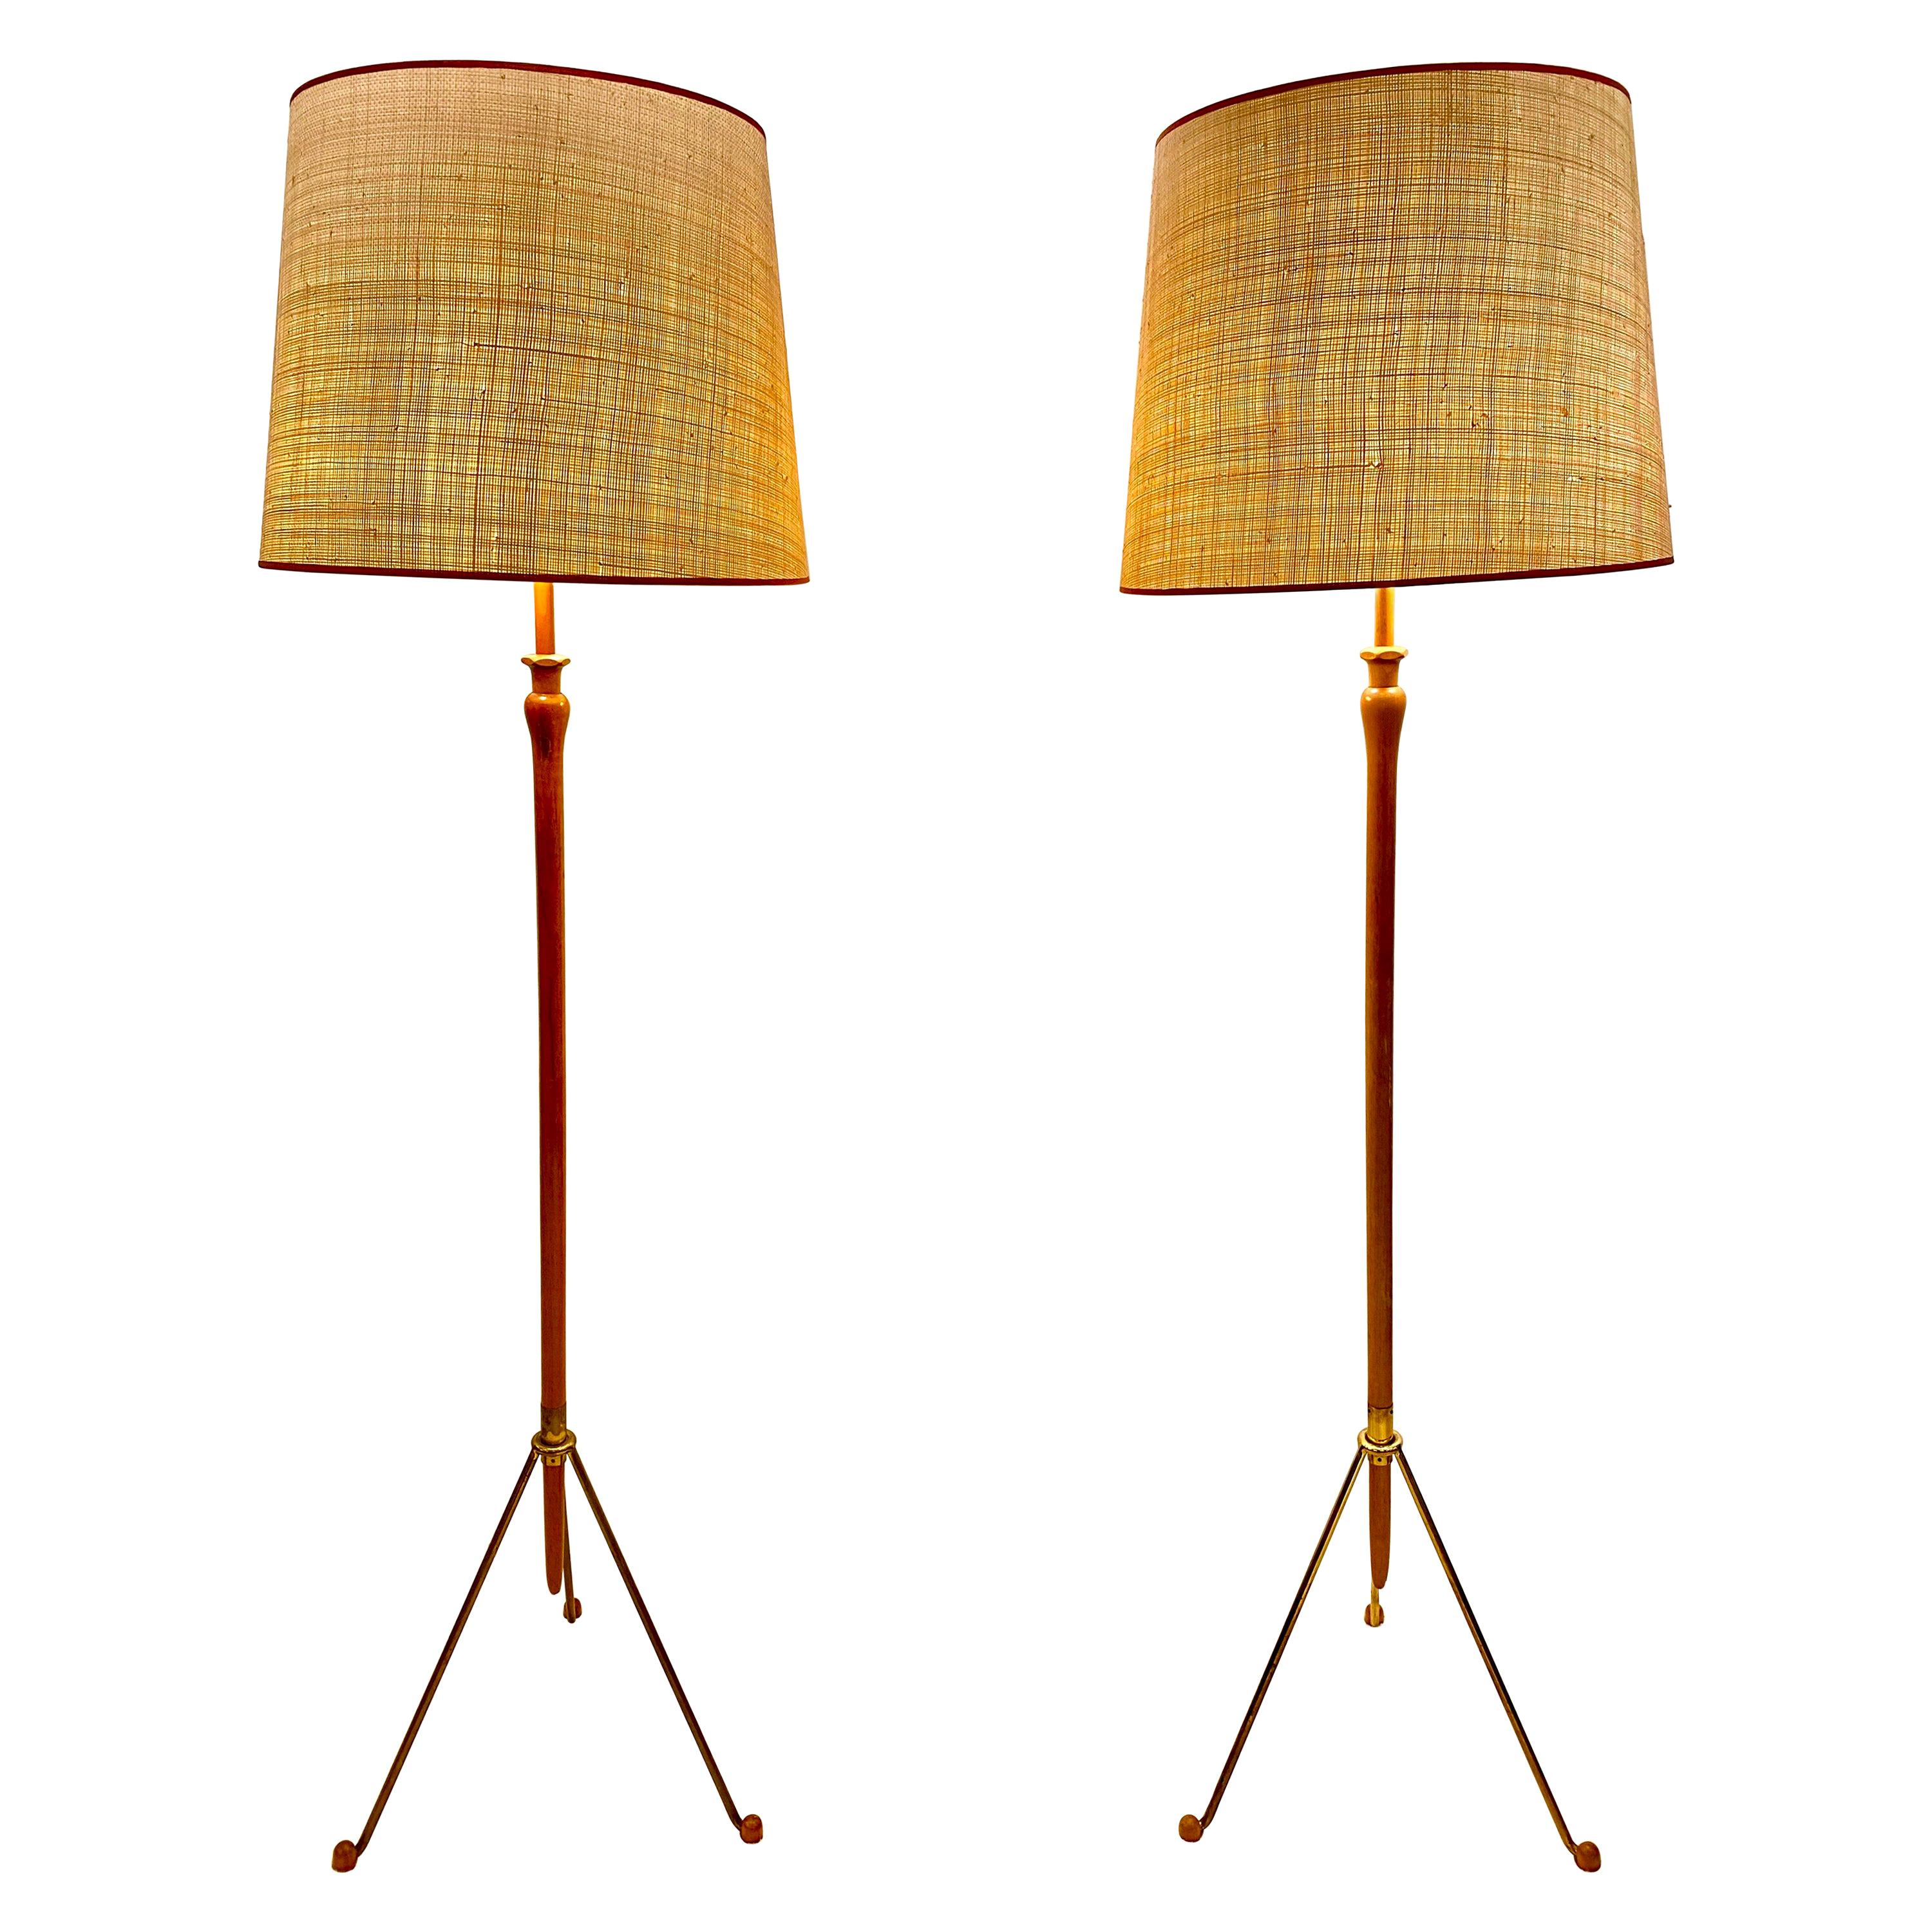 Floor Lamps, Austria, 1950s-1960s